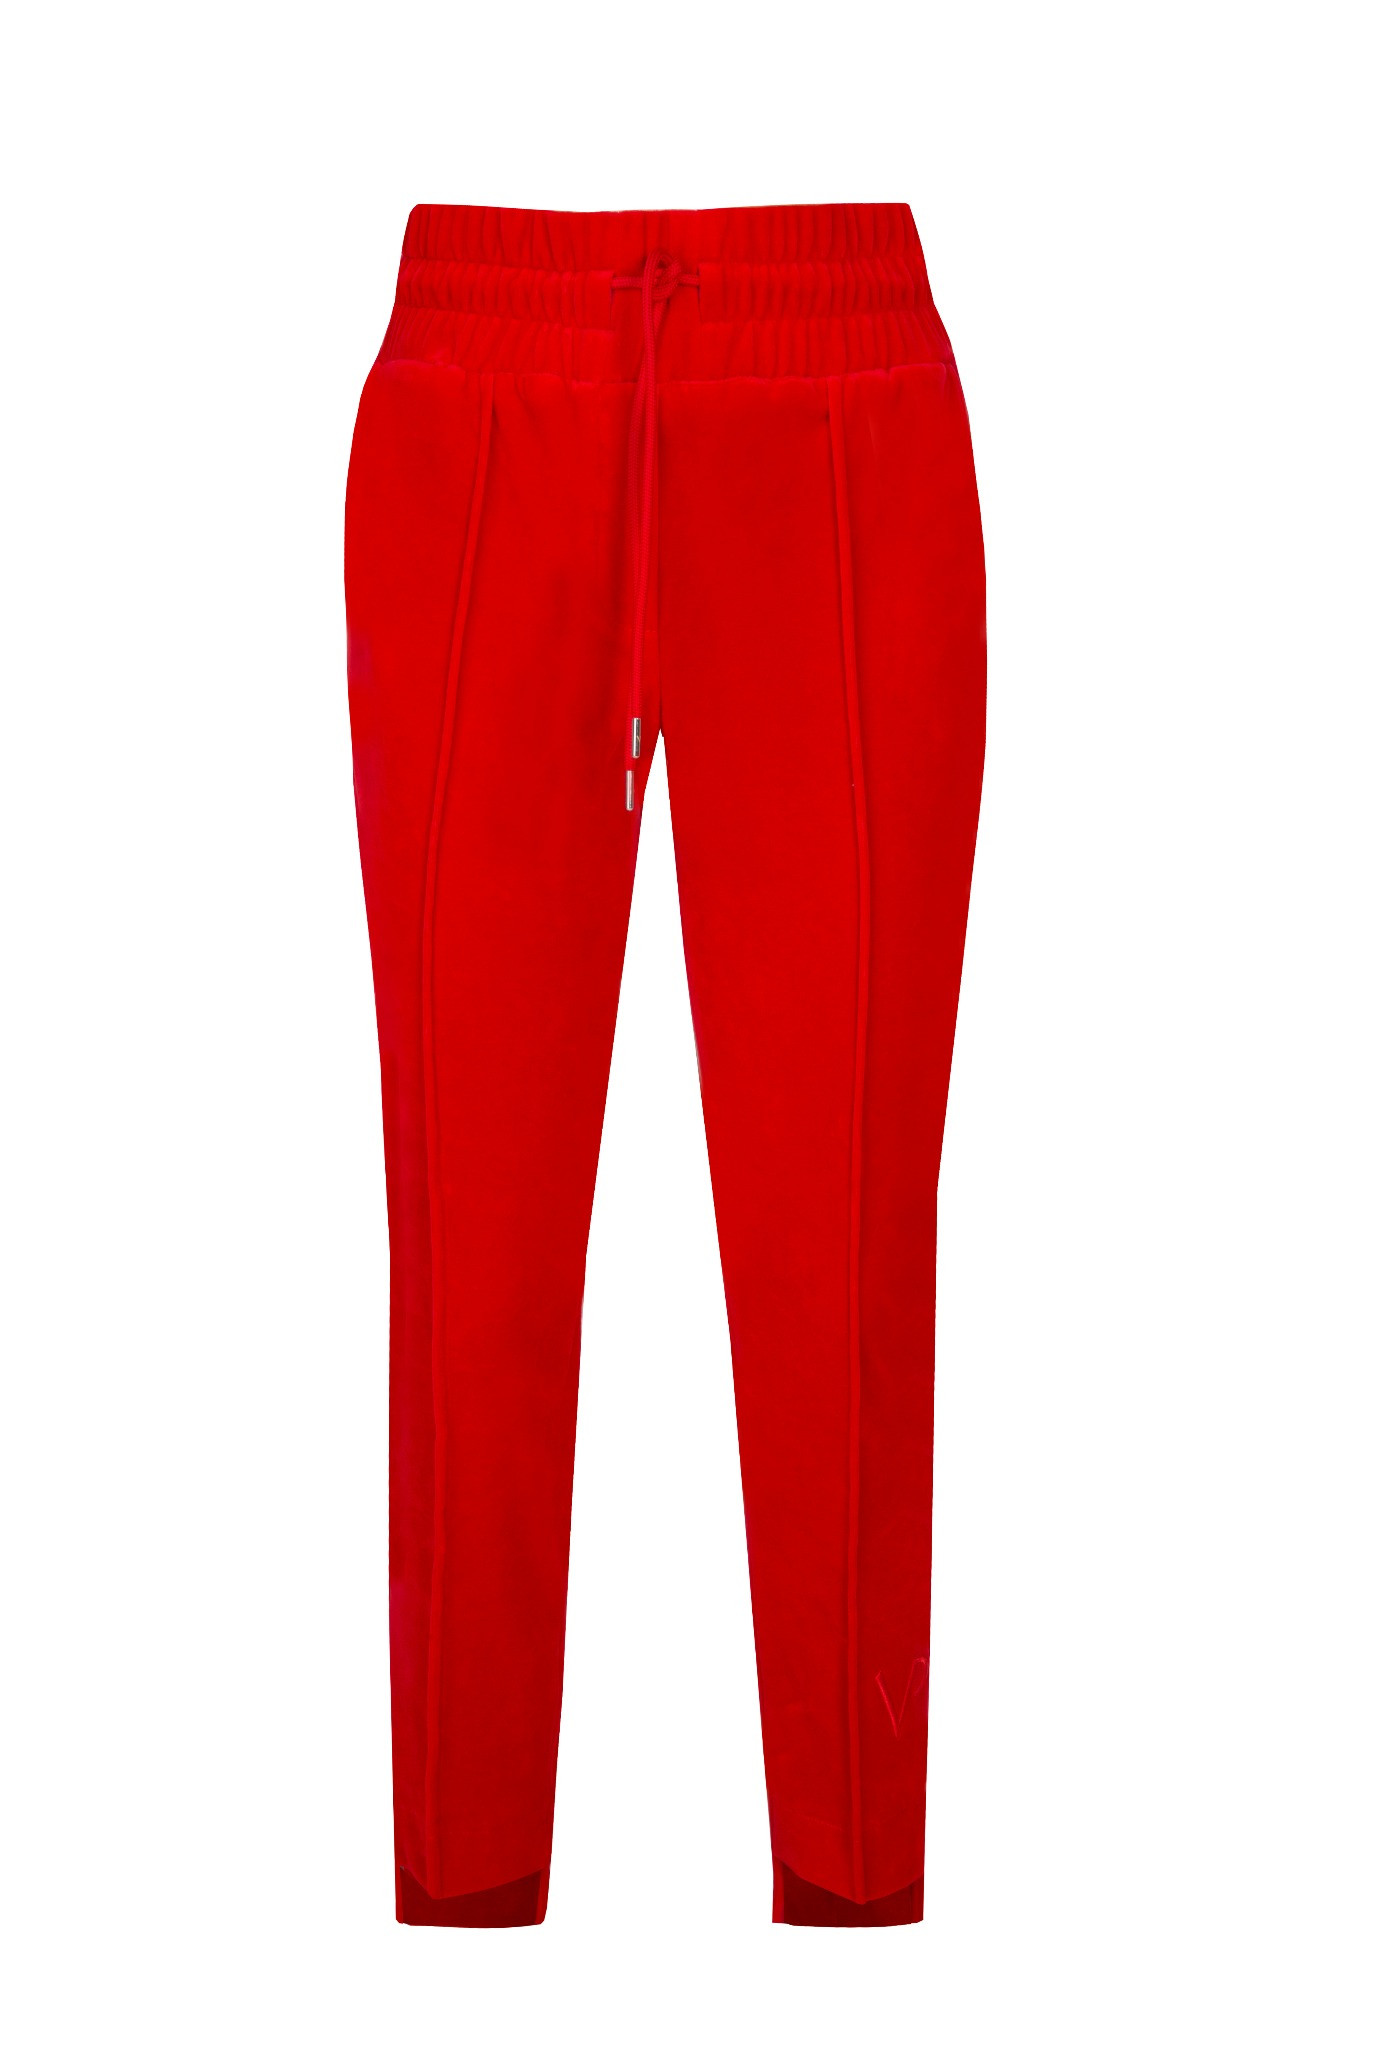 Spodnie dresowe VELVET czerwone 